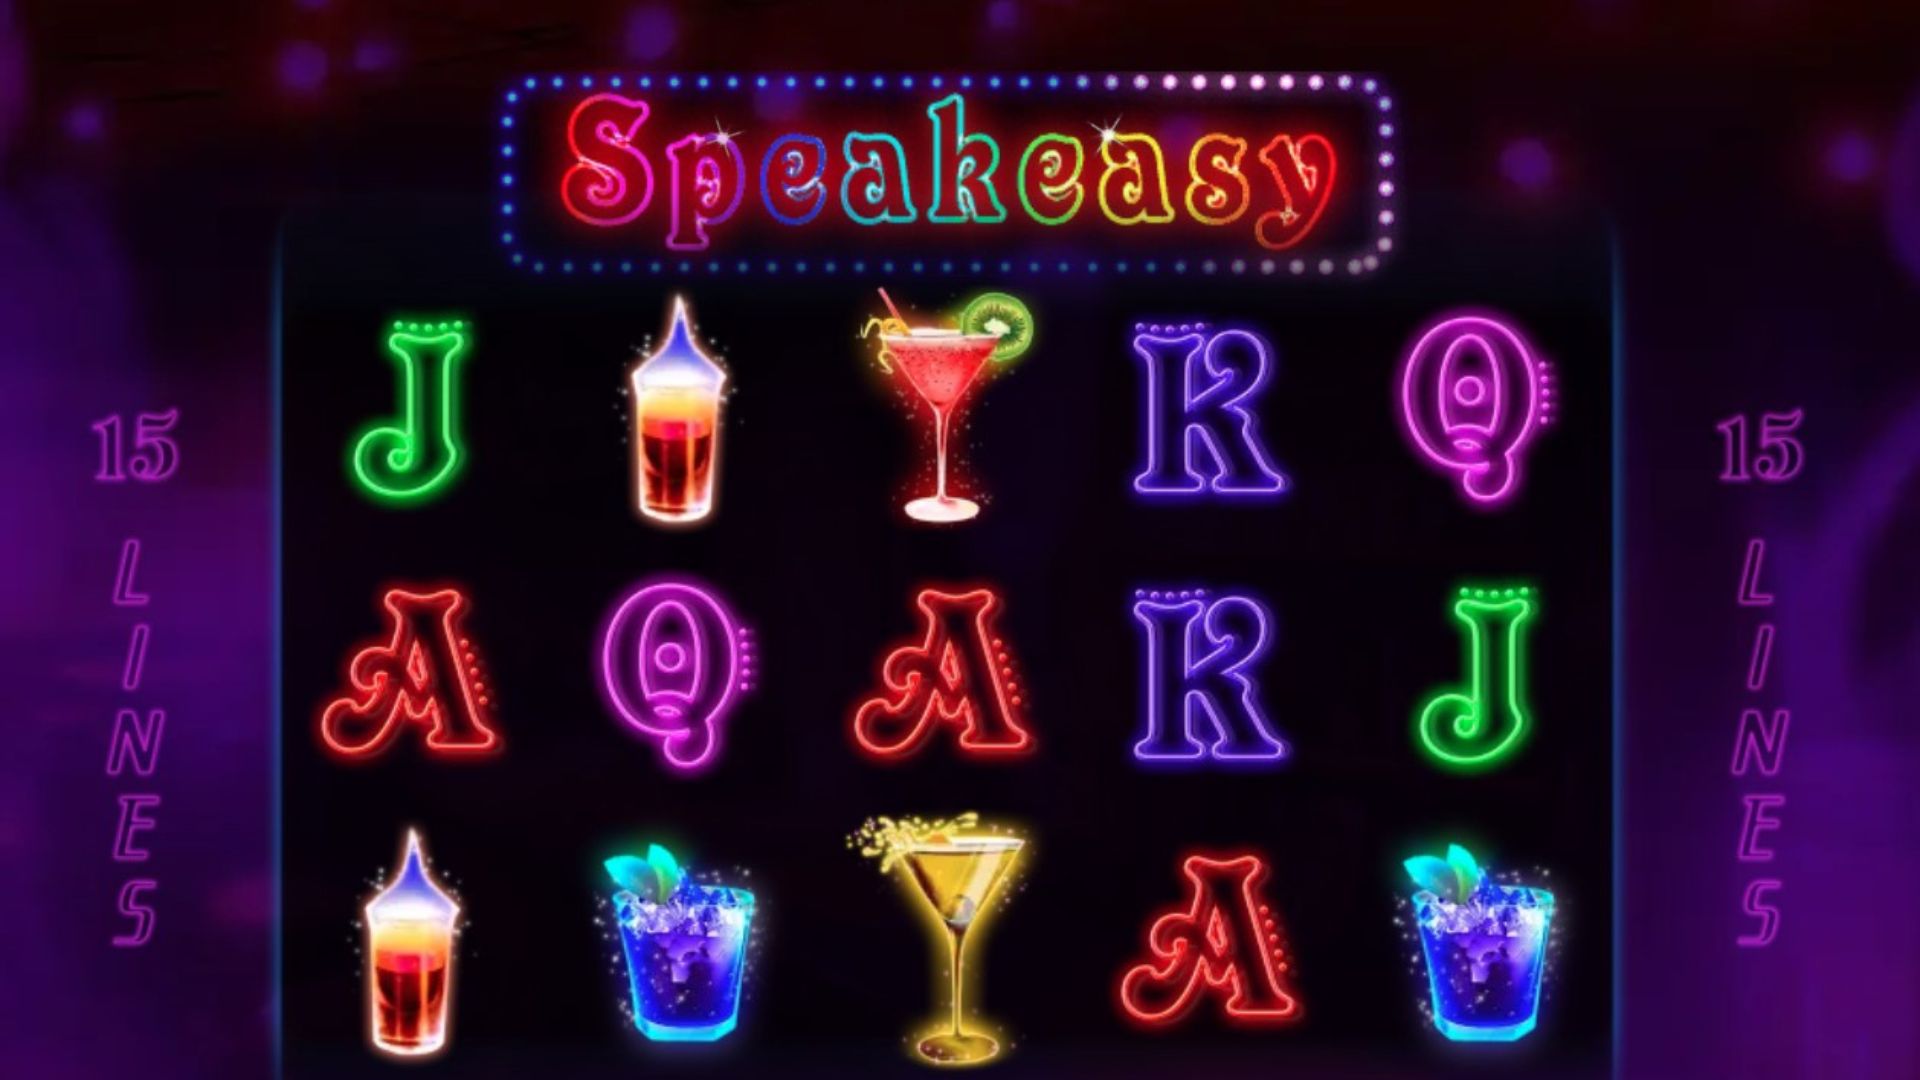 tampilan game slot speakeasy